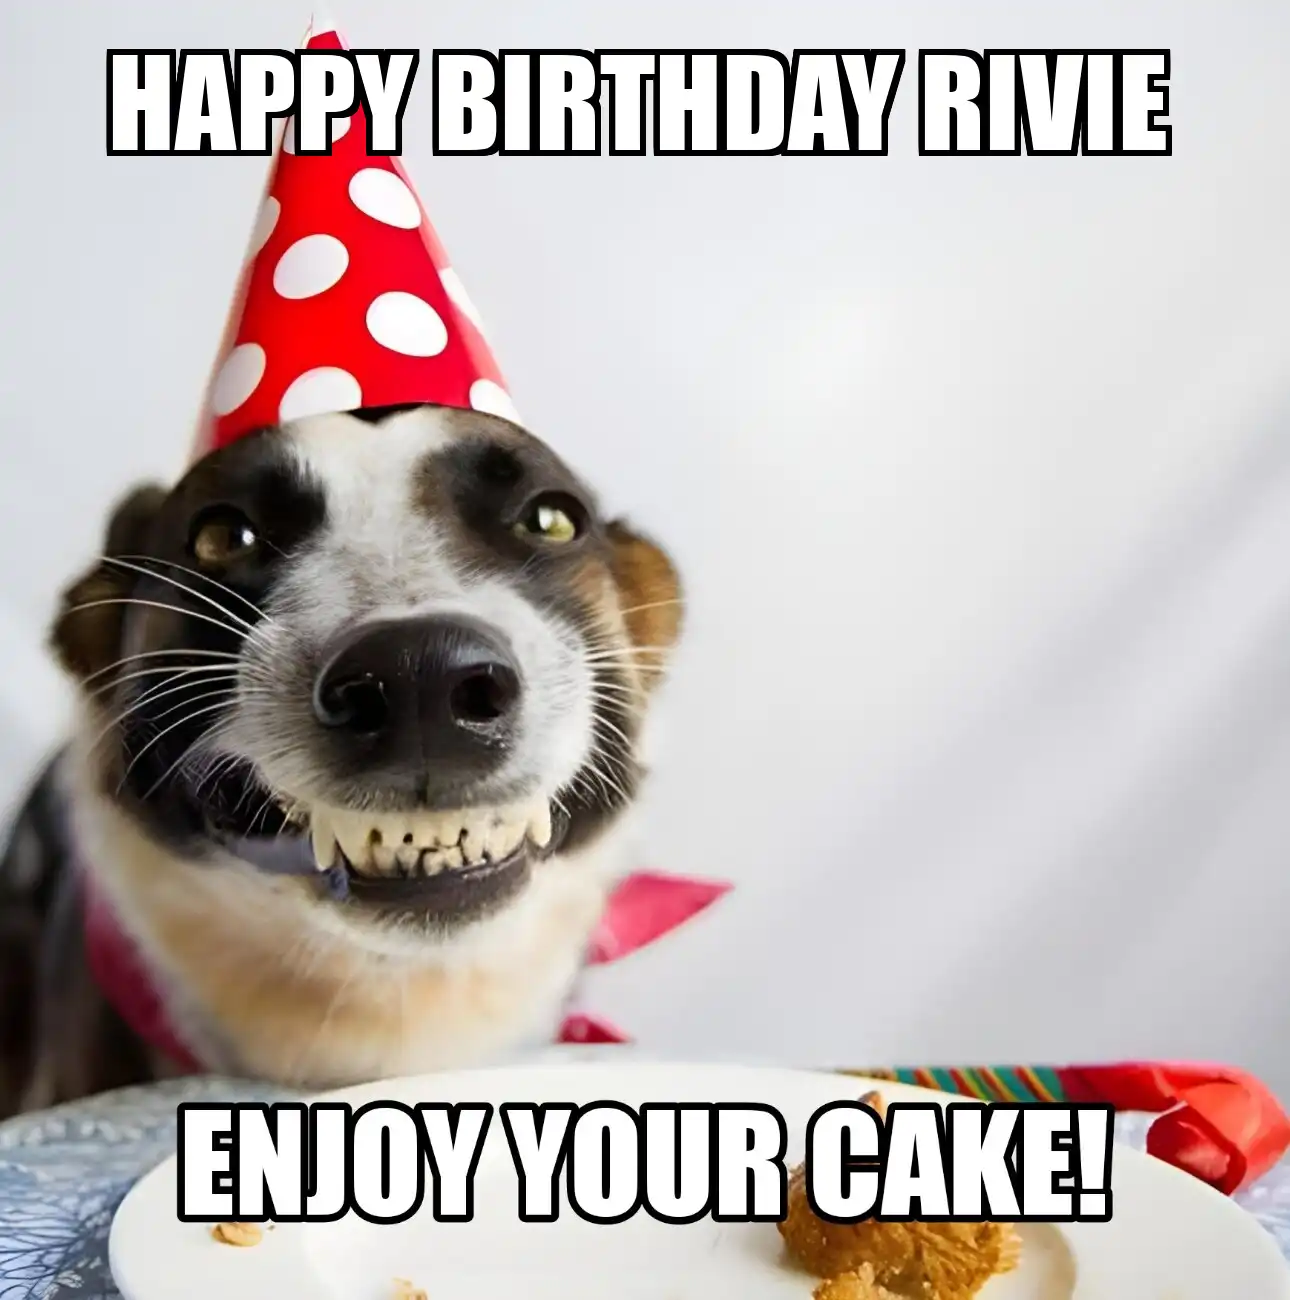 Happy Birthday Rivie Enjoy Your Cake Dog Meme